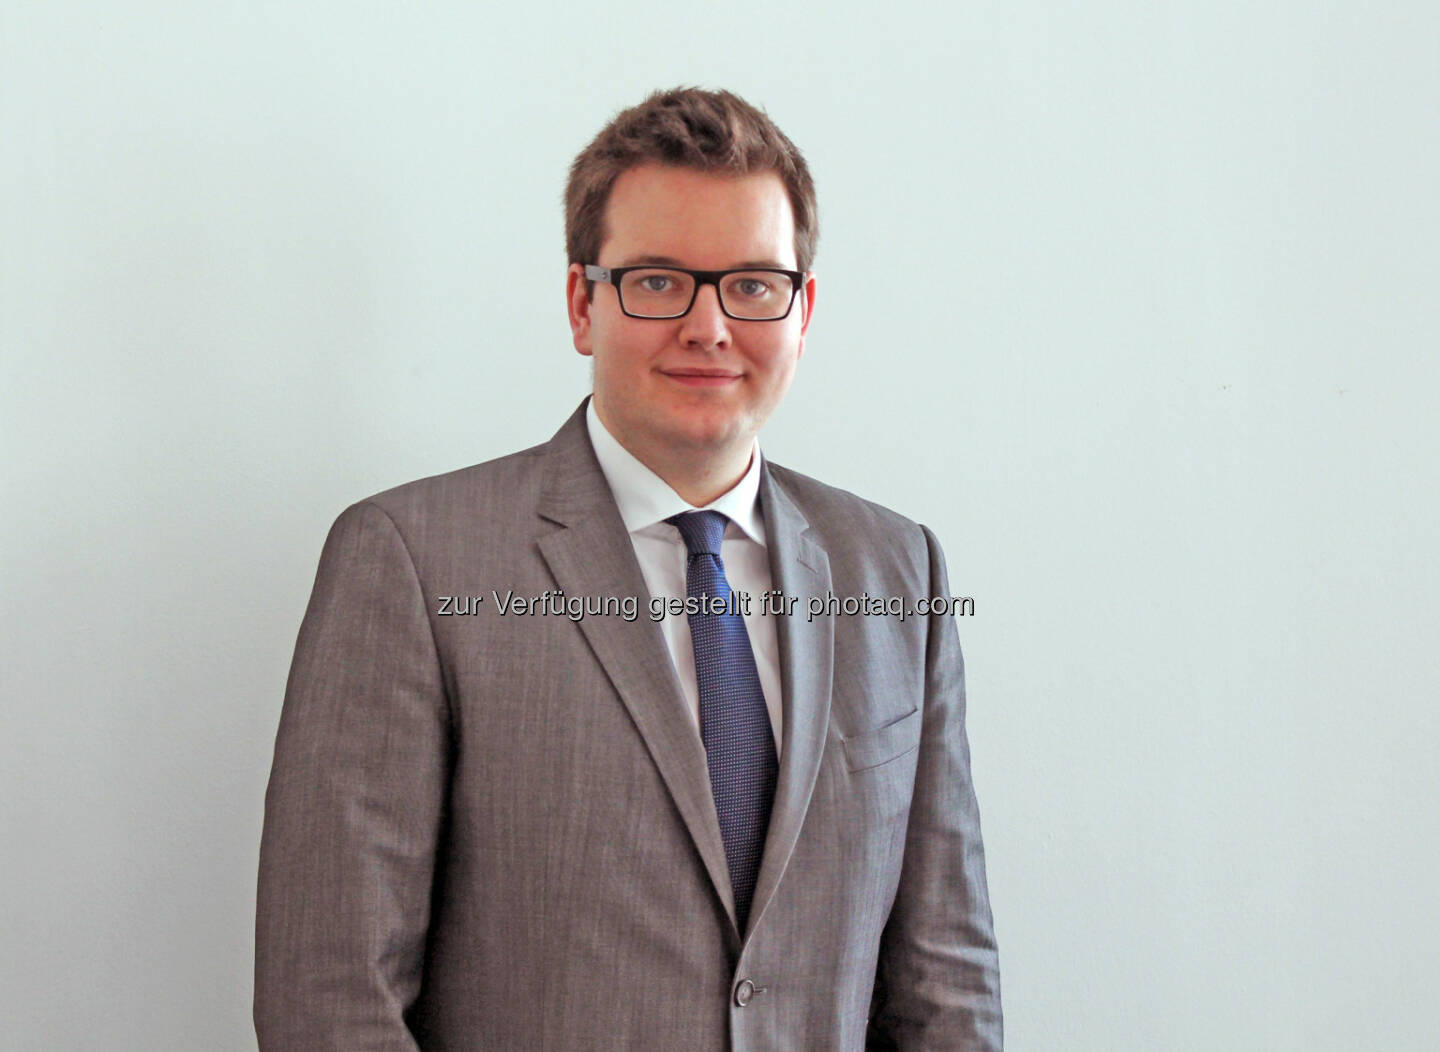 Lukas Lechner übernimmt als neuer Pressesprecher die Leitung der Bereiche Presse und Politik beim Wirtschaftsbund Wien : Fotocredit:WB-Wien